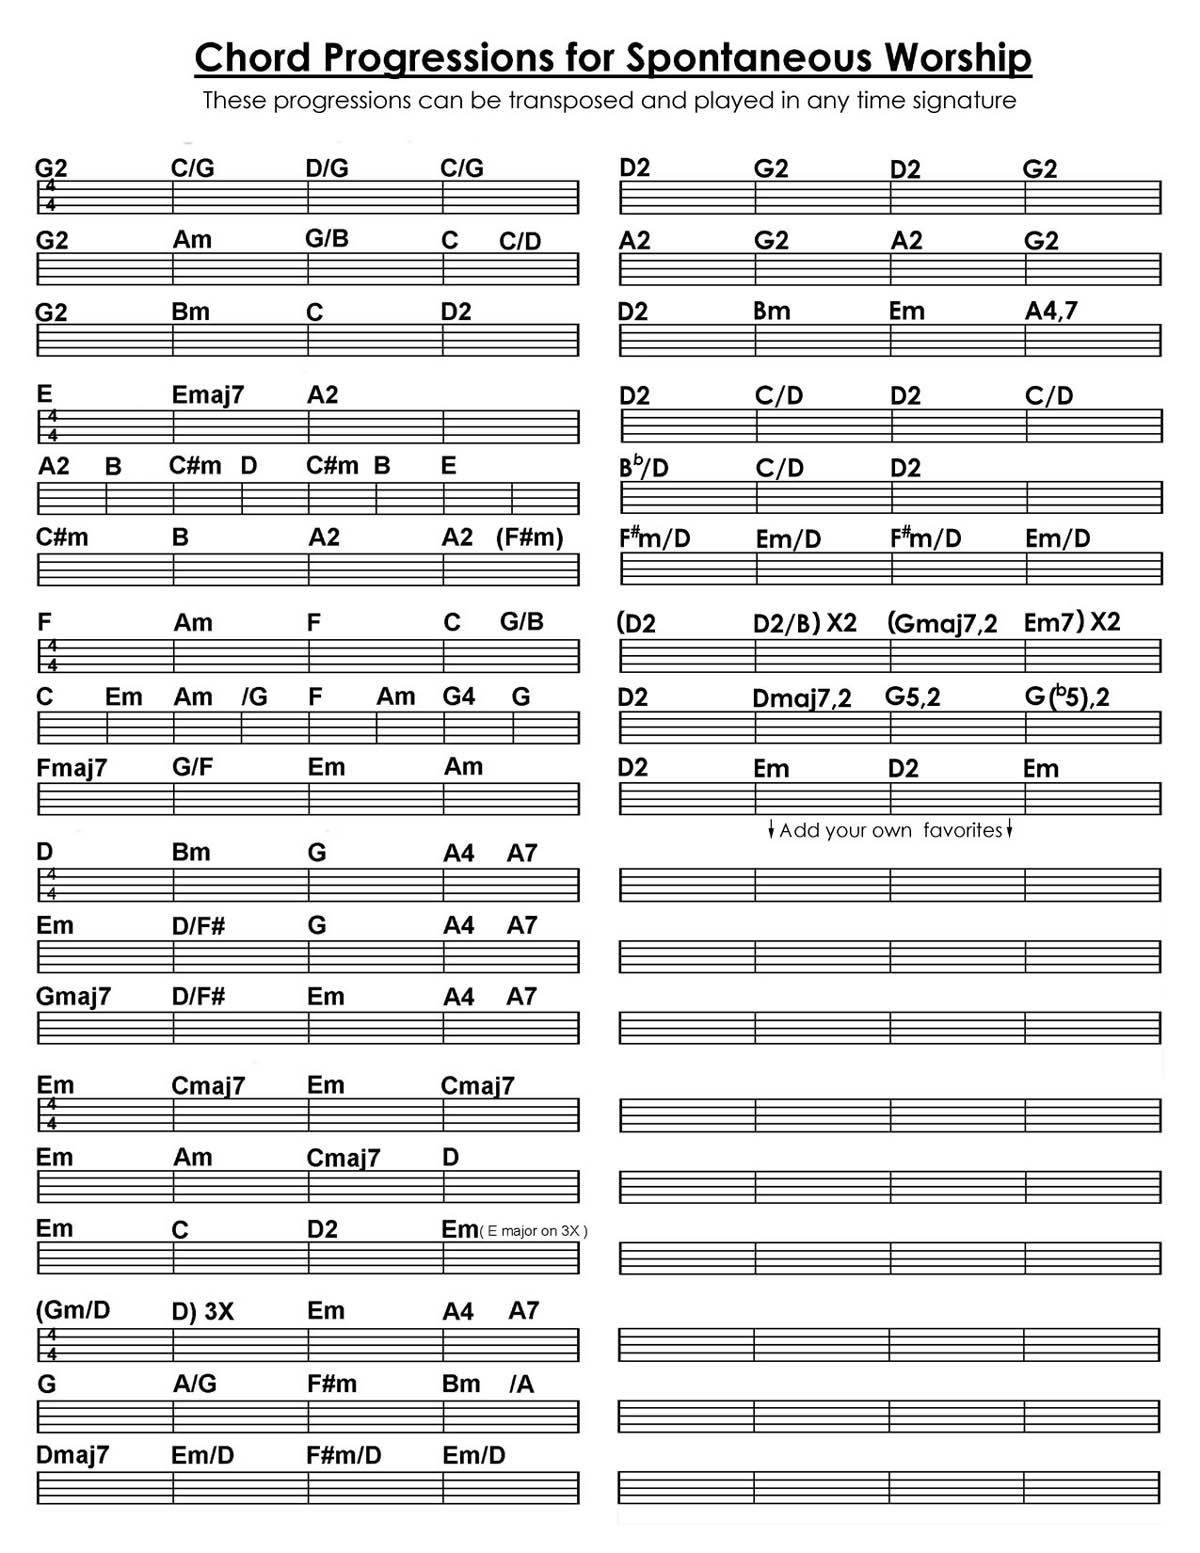 Total Praise Chord Chart